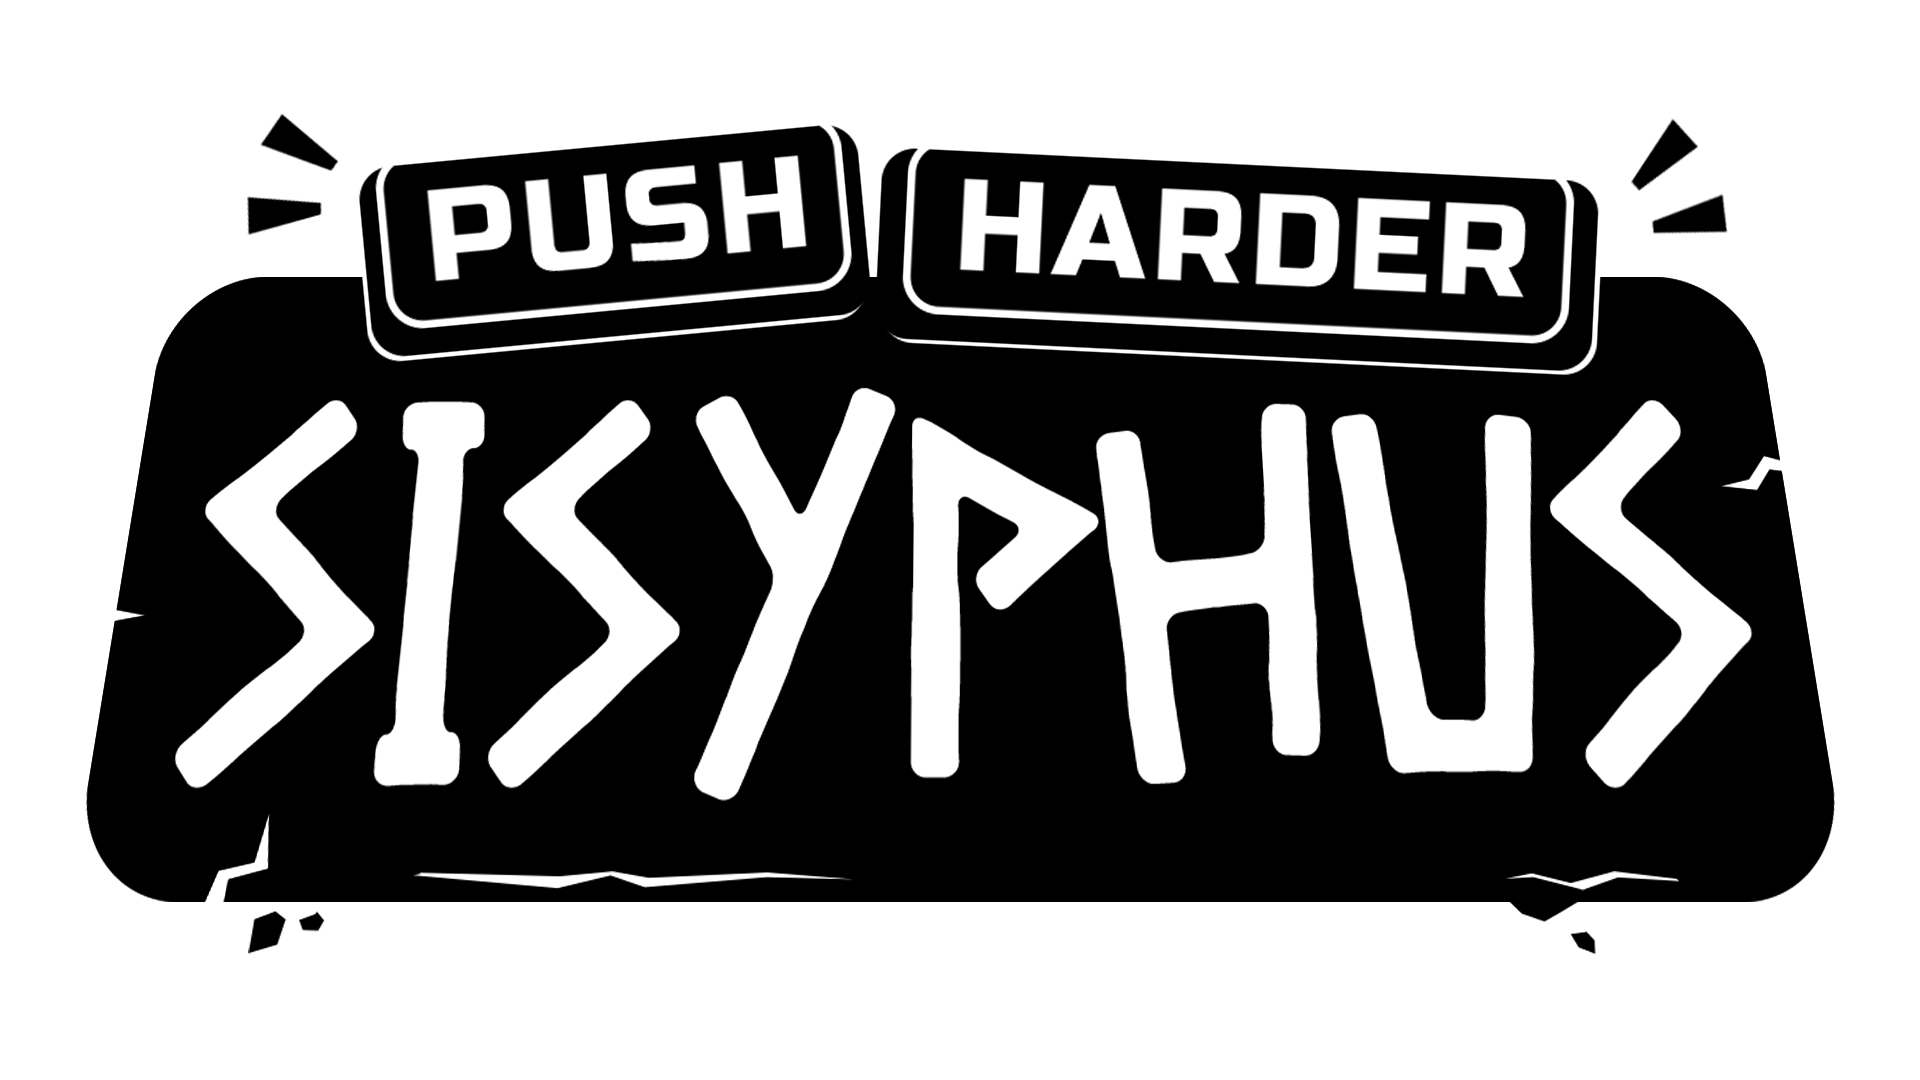 Push Harder Sisyphus